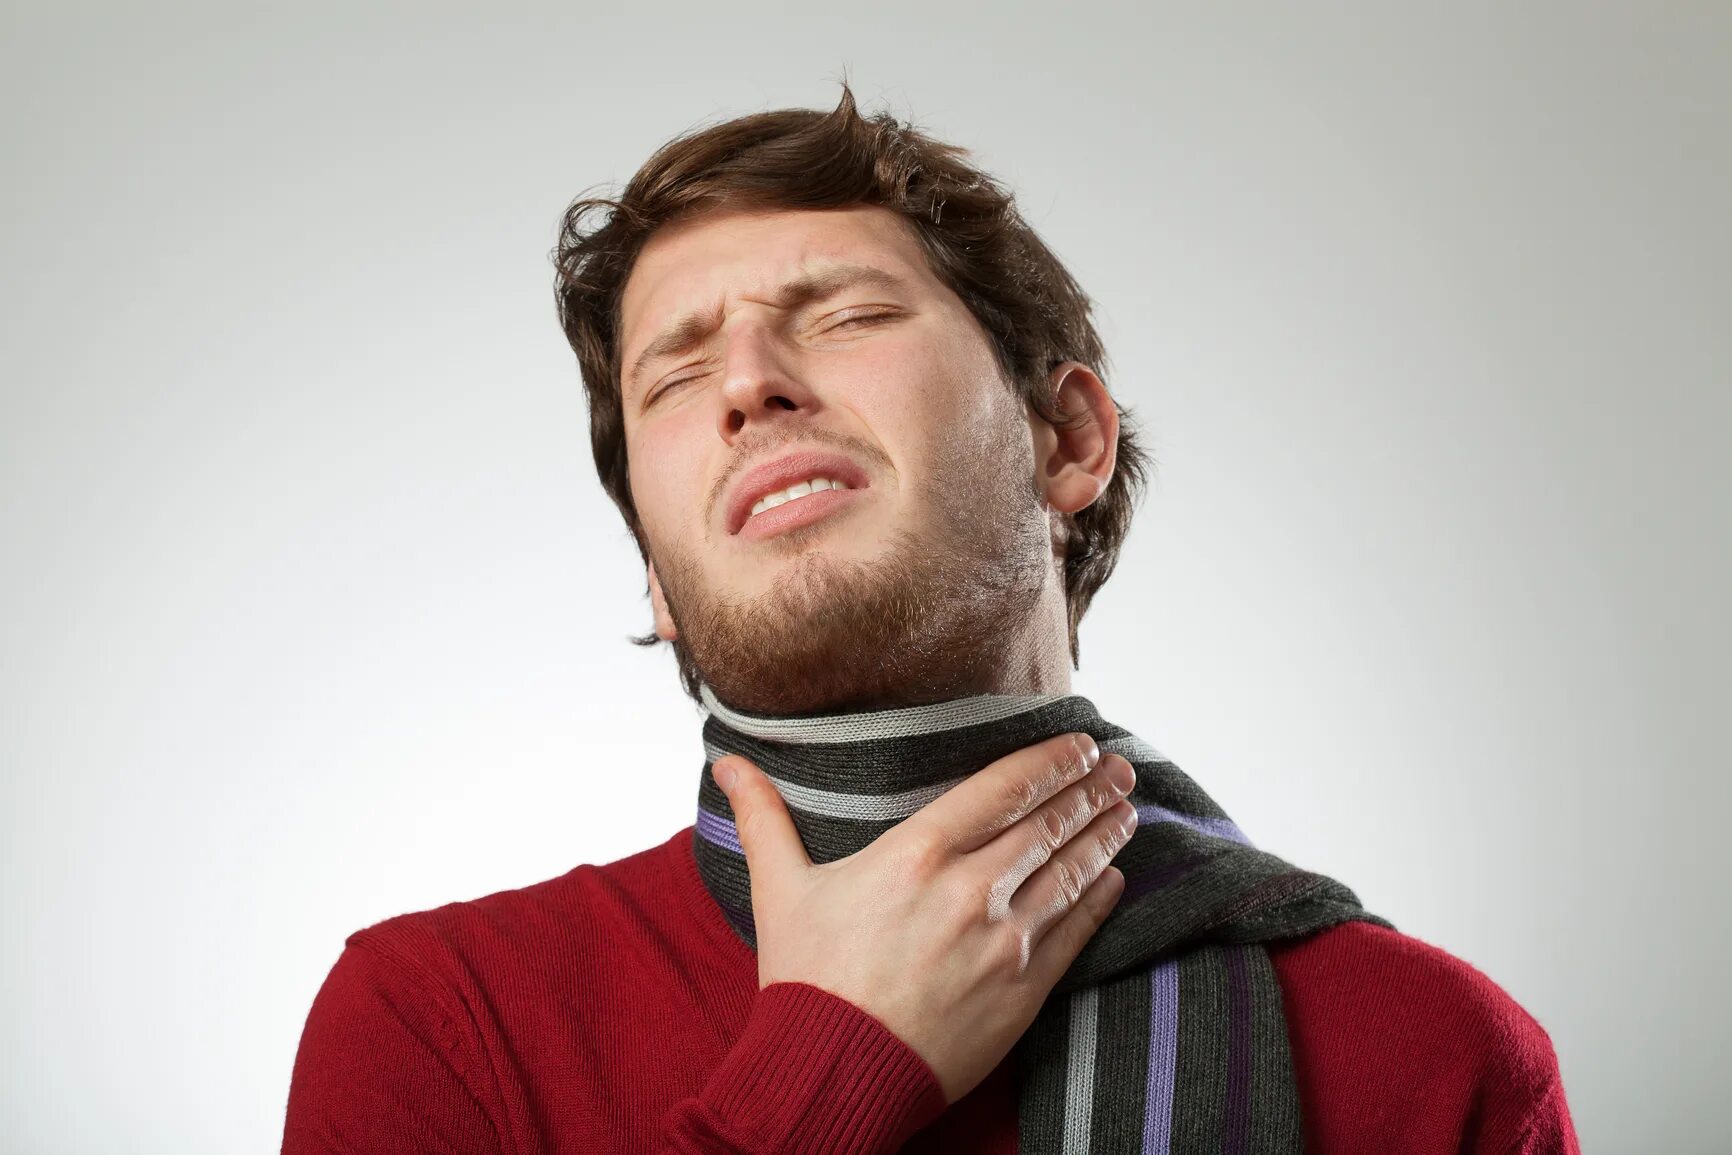 Шарф на человеке. Человек с больным горлом. Боль в горле шарф.